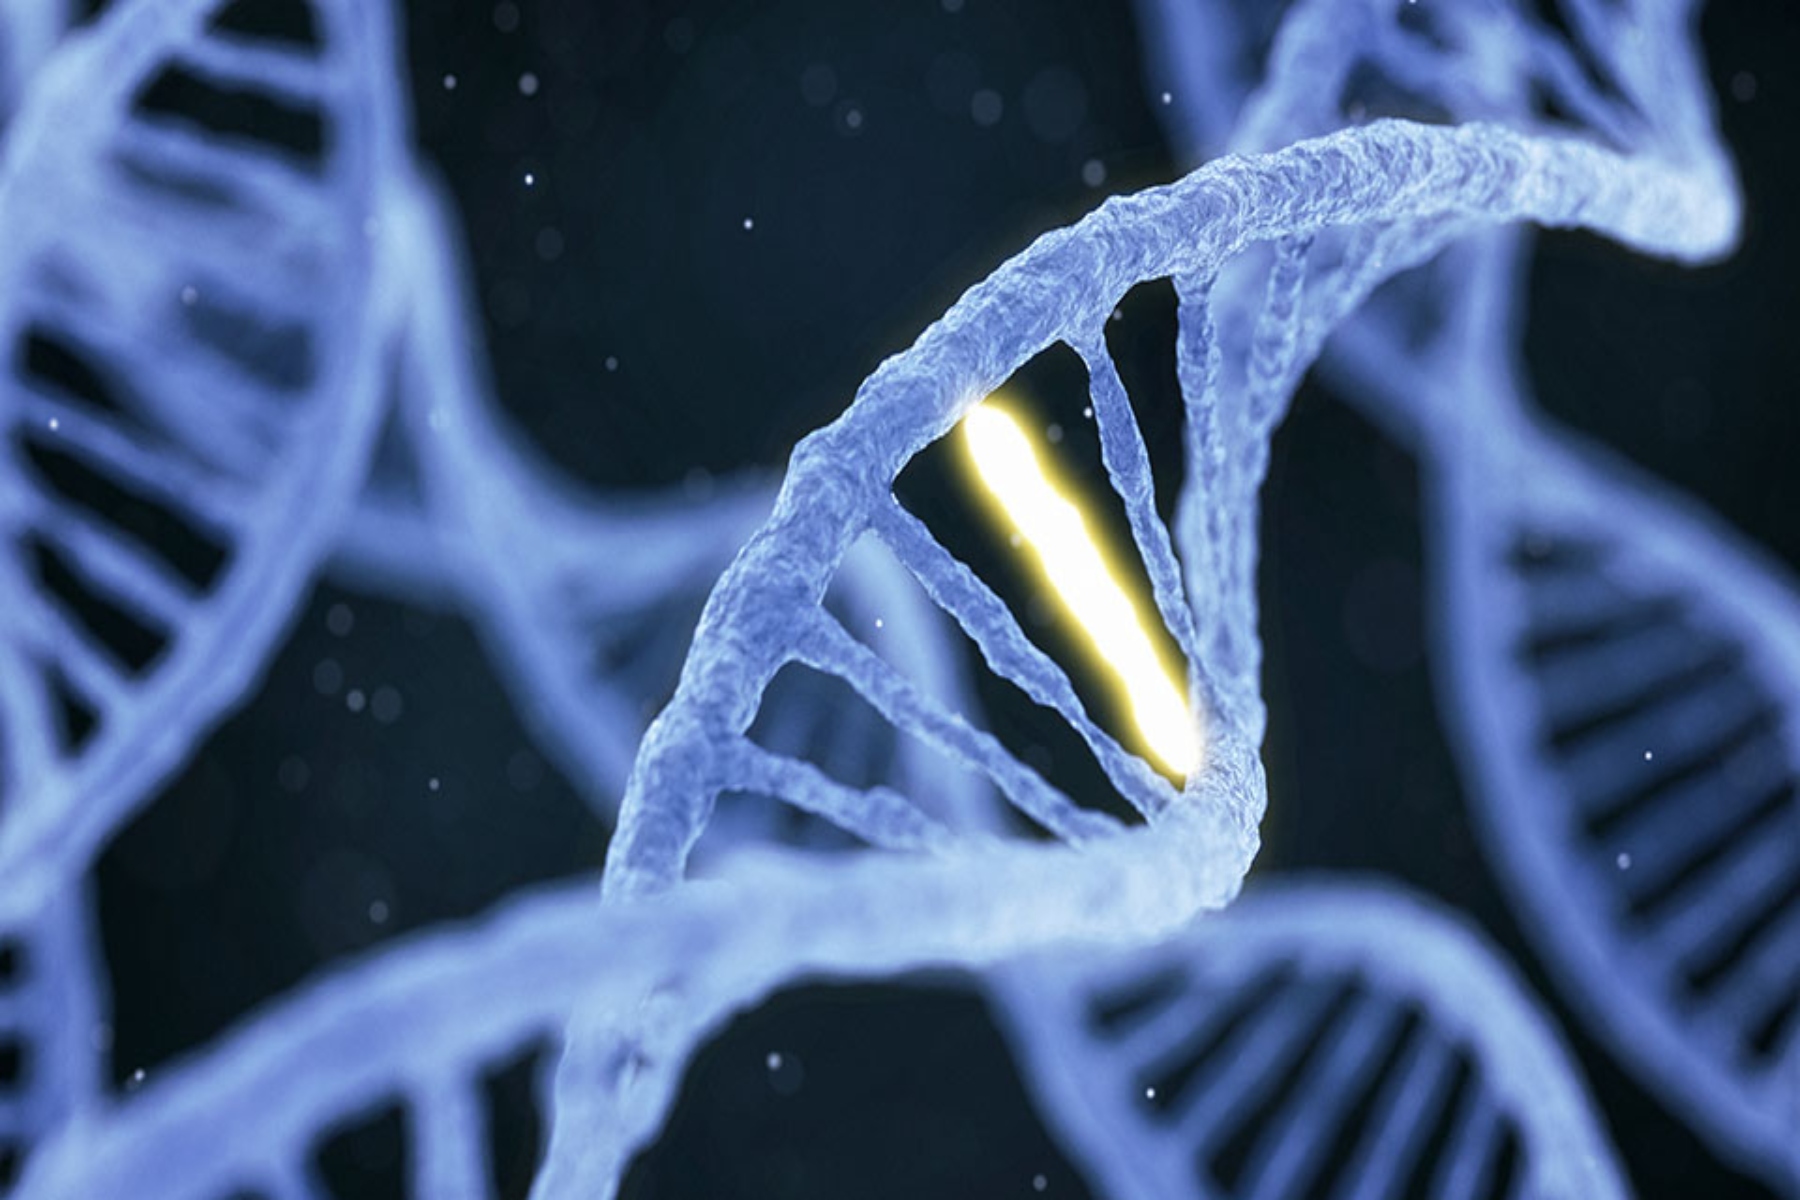 Γονίδια ασθένειες: Αποκαλύπτοντας πέντε γενετικά επηρεαζόμενες ασθένειες